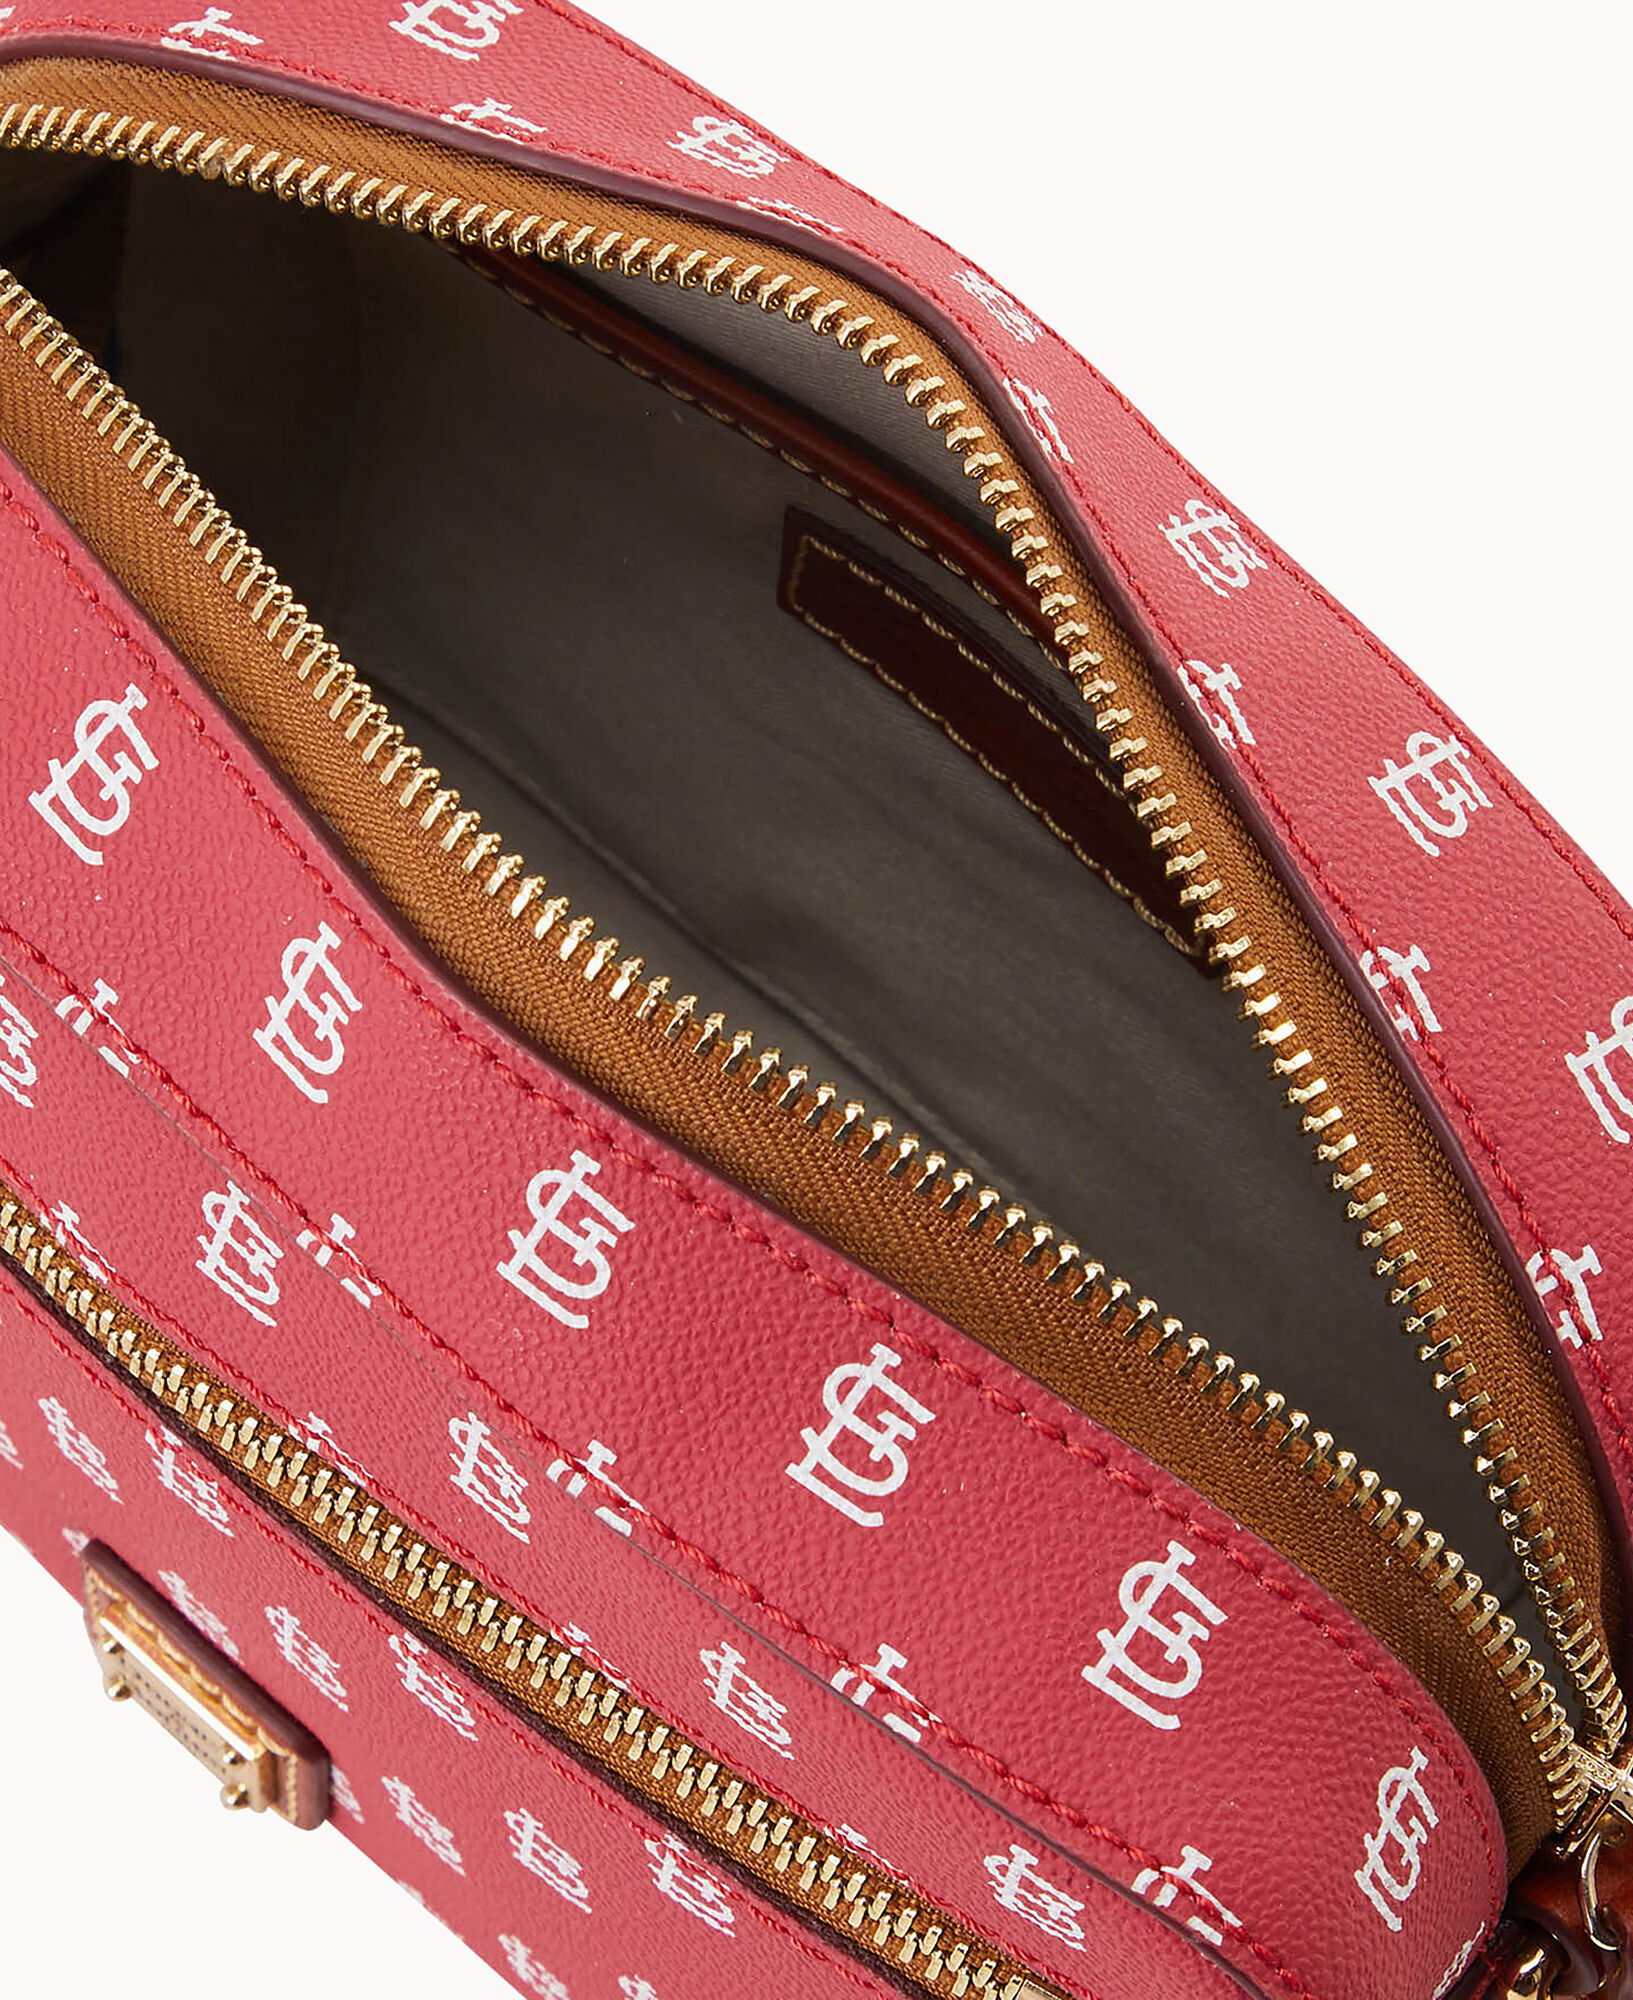 Vintage Silhouette St. Louis Cardinals Purse Shoulder Handbag